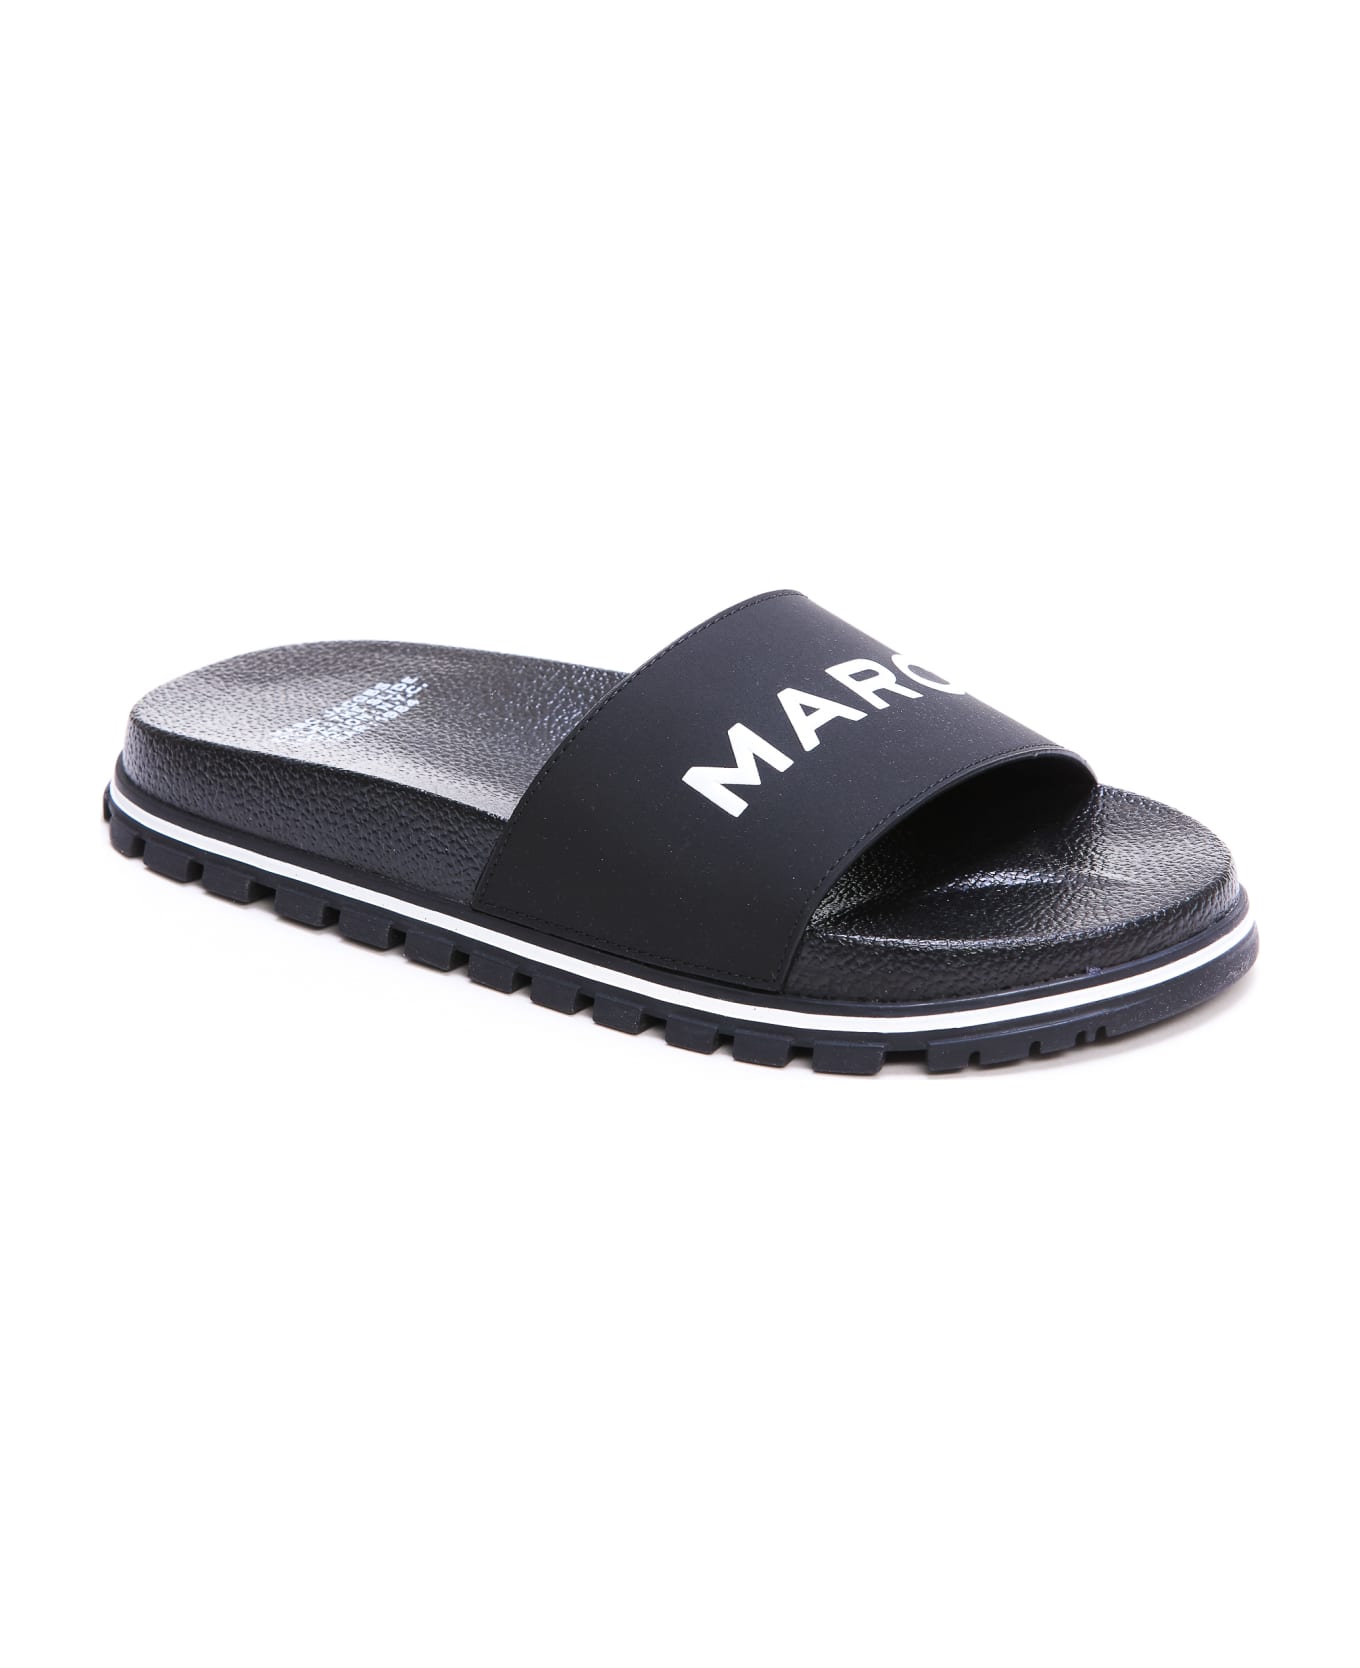 Marc Jacobs Colors The Slide Sandals - Black